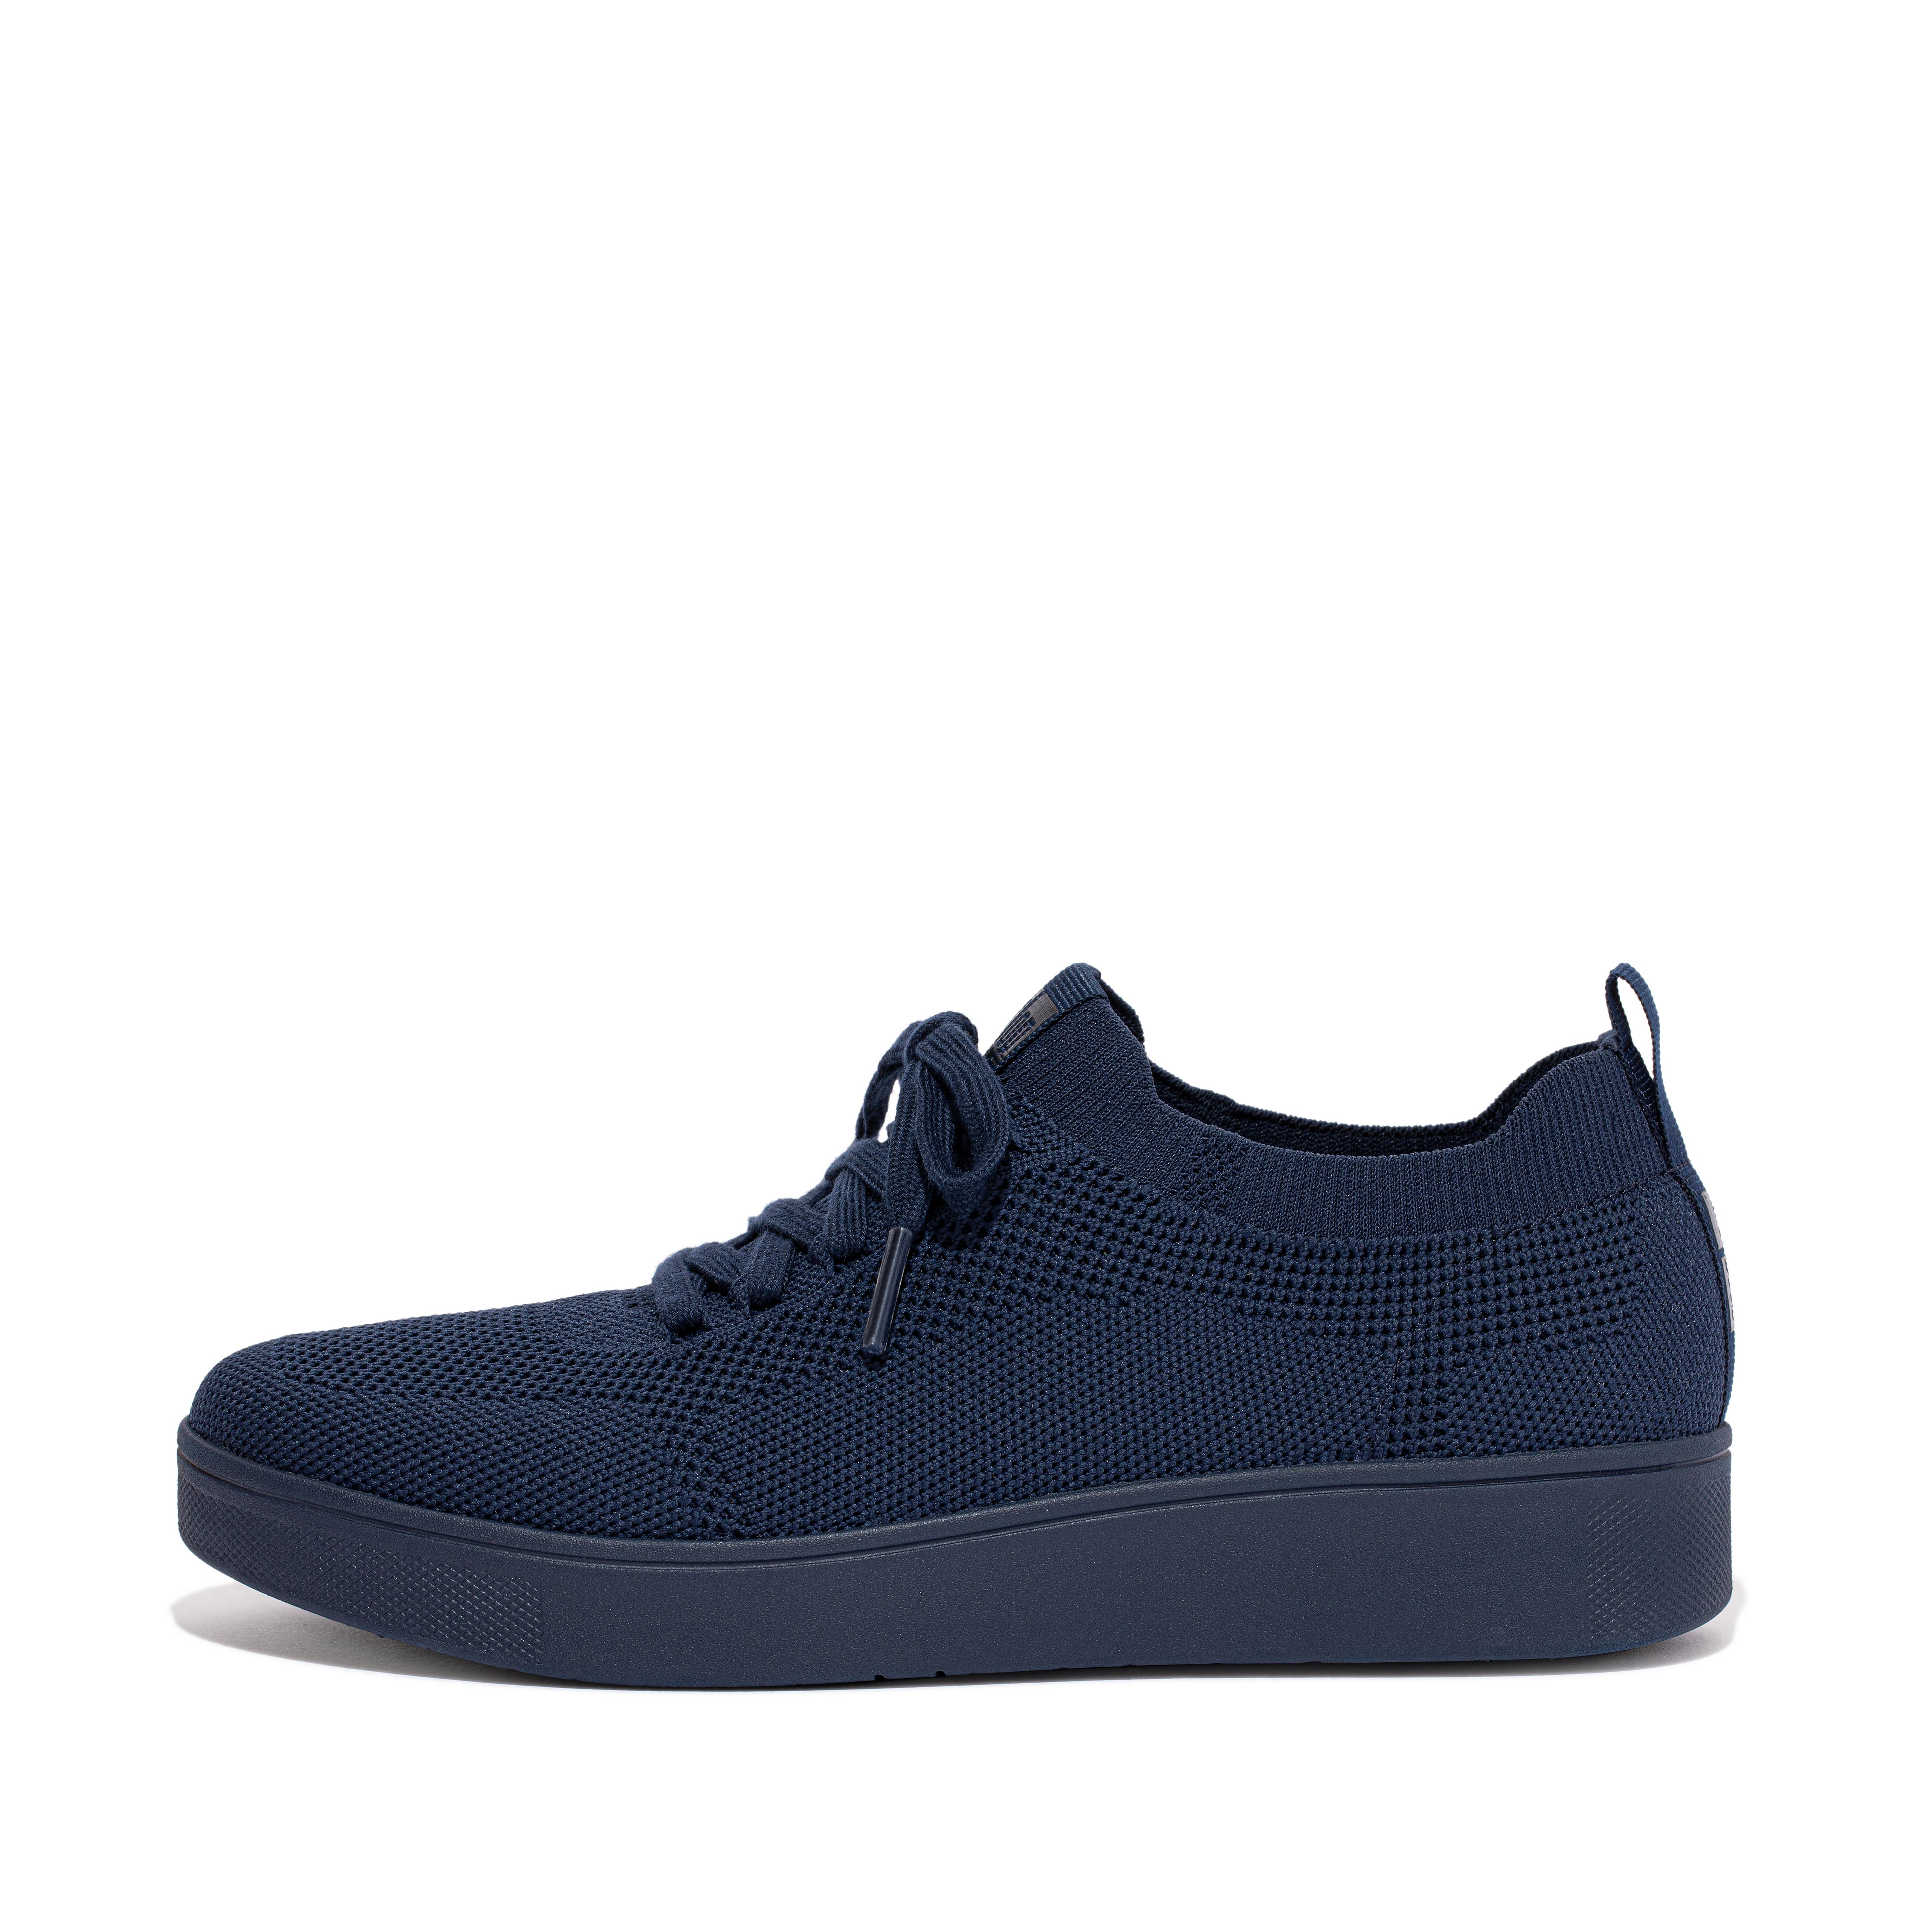 핏플랍 스니커즈 FitFlop RALLY Water-Resistant Knit Sneakers,Midnight Navy